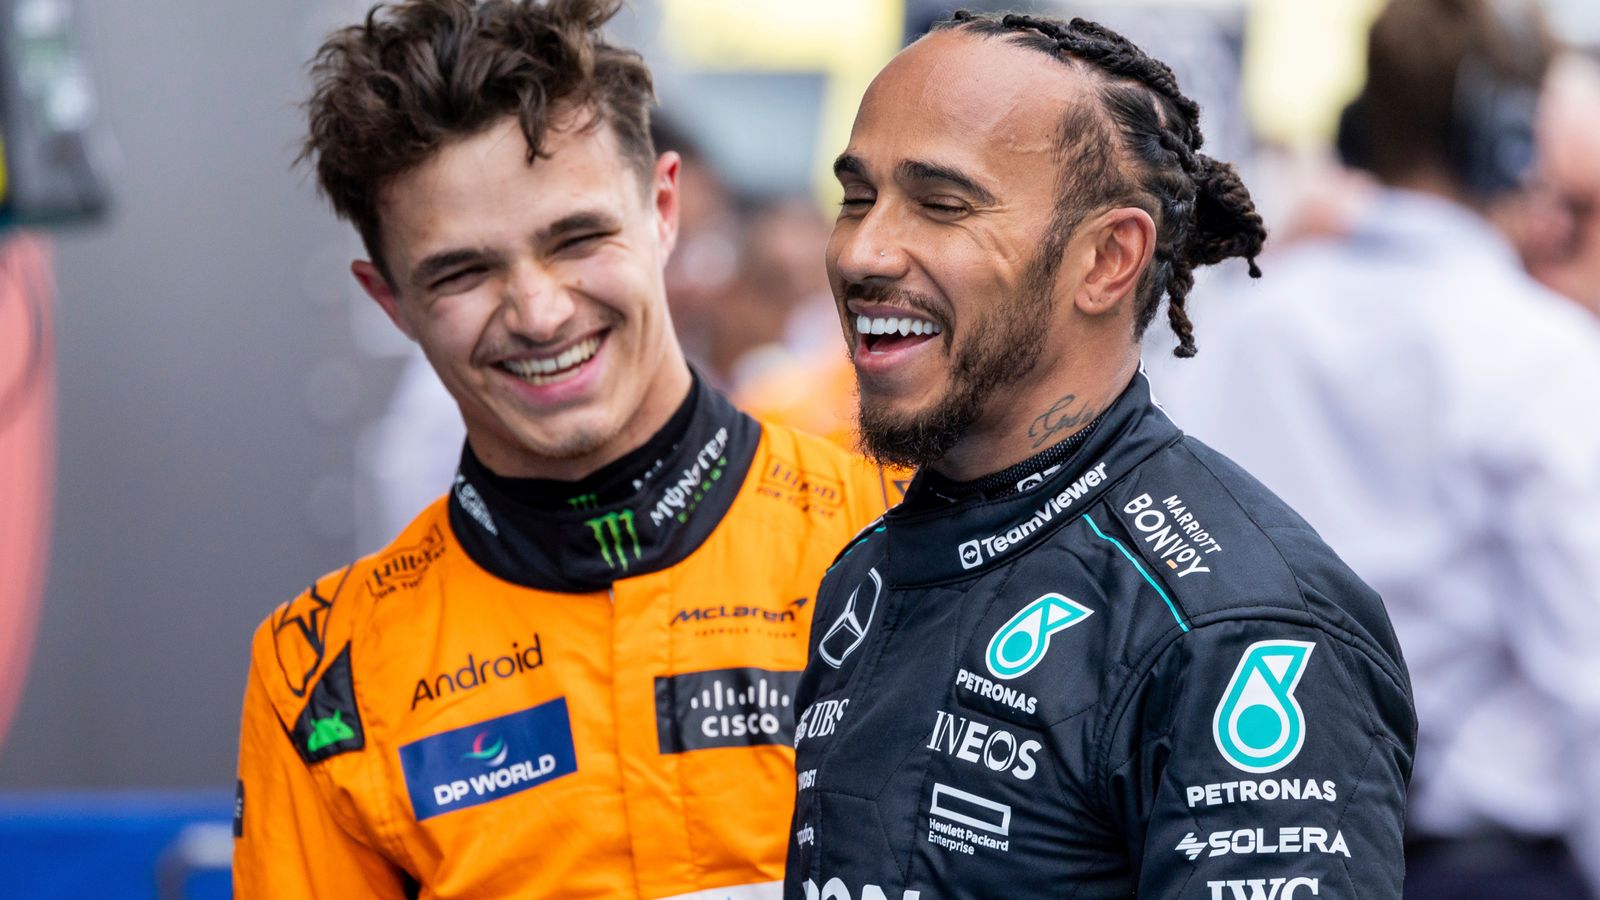 Lewis Hamilton mira a la victoria en el Gran Premio de España tras finalizar un “hermoso” tercer puesto en la clasificación |  noticias de formula 1